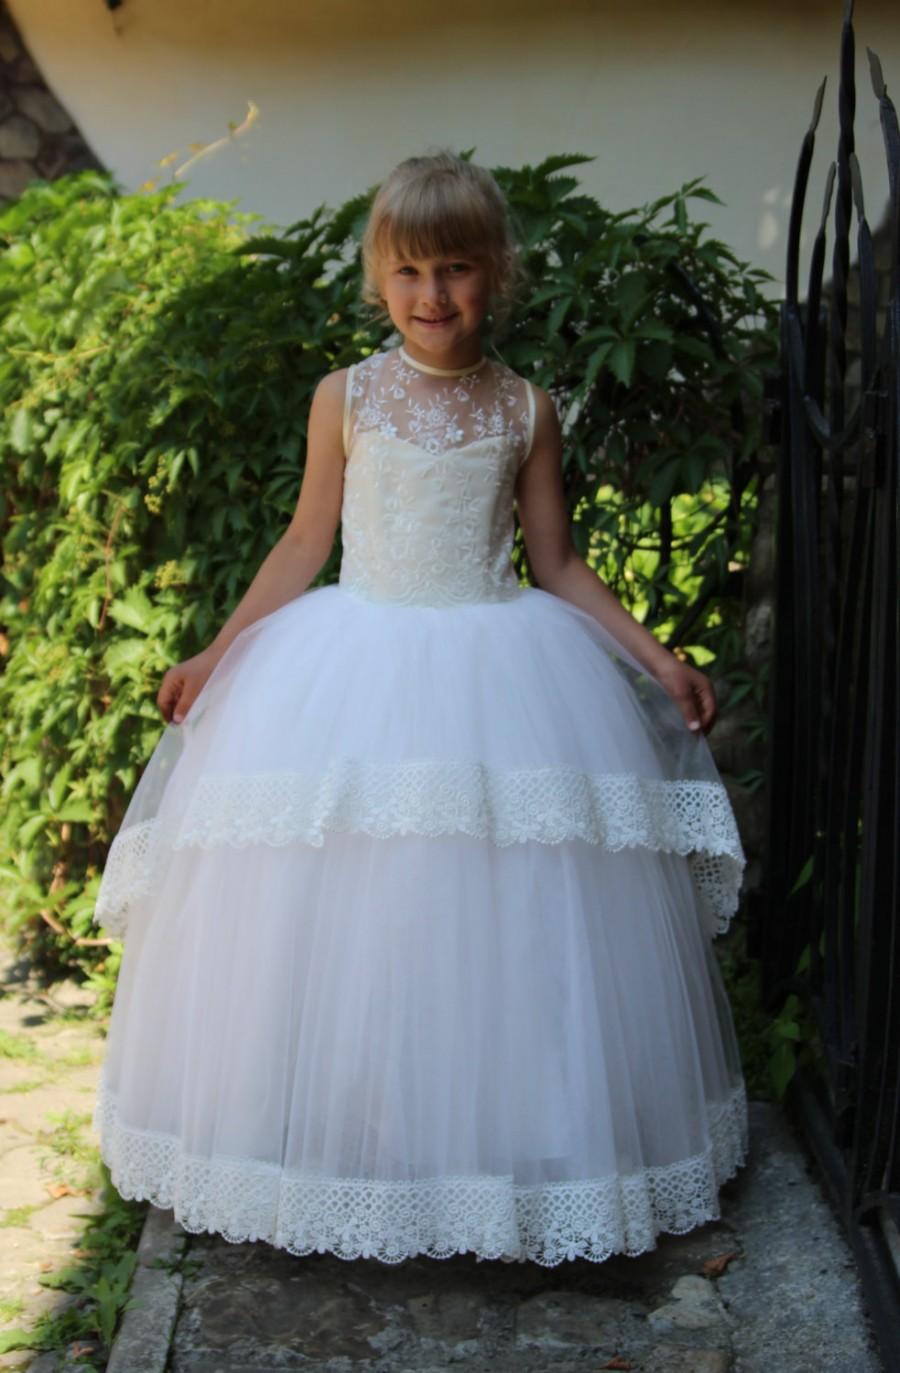 زفاف - Lace Ivory Flower Girl Dress - Wedding Party Birthday Peasant Bridesmaid Ivory Lace Dress